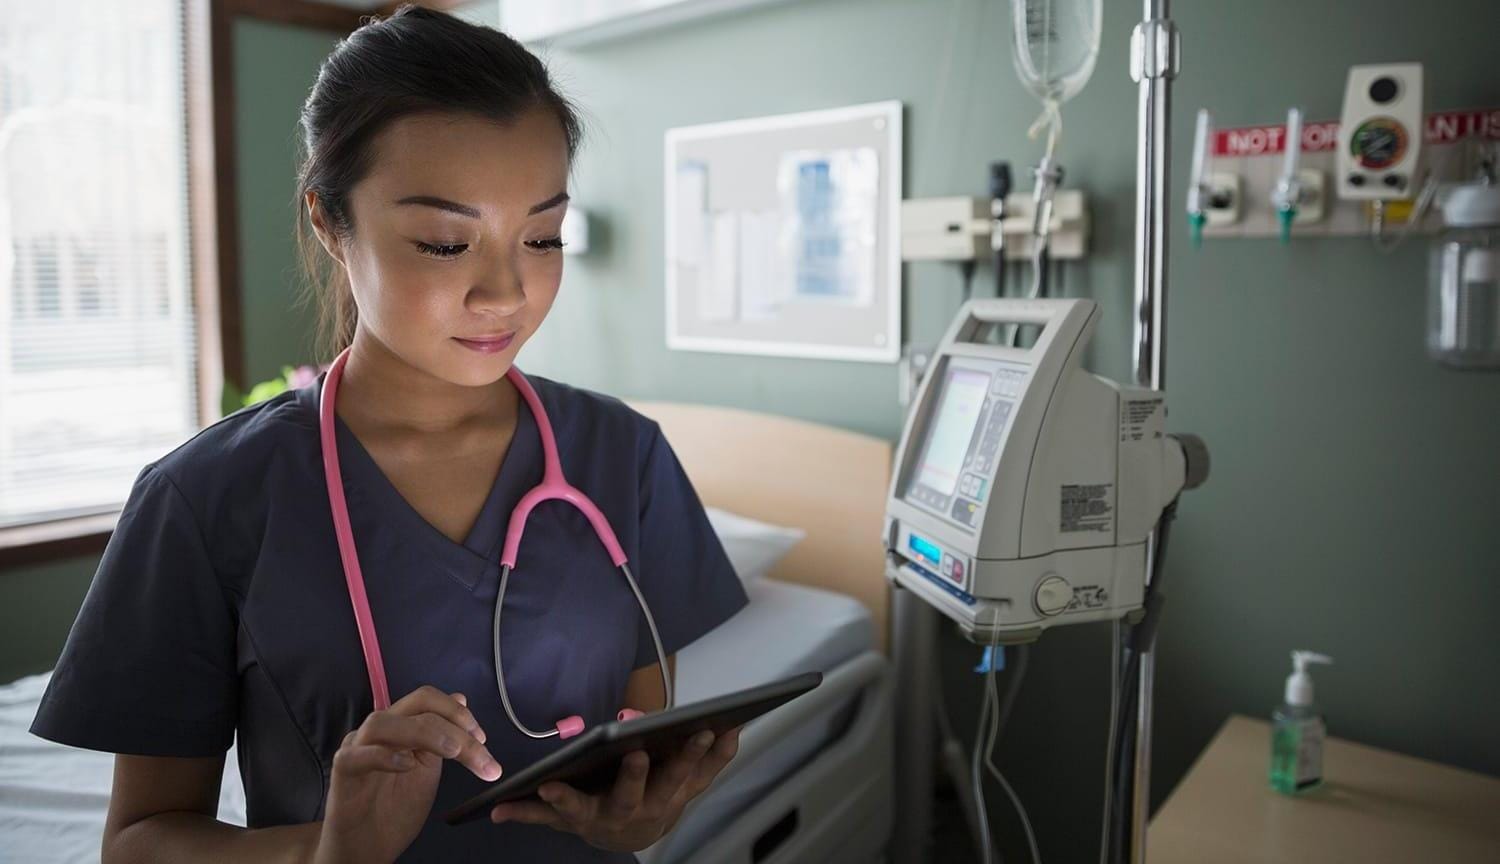 Nurse using digital tablet in hospital room